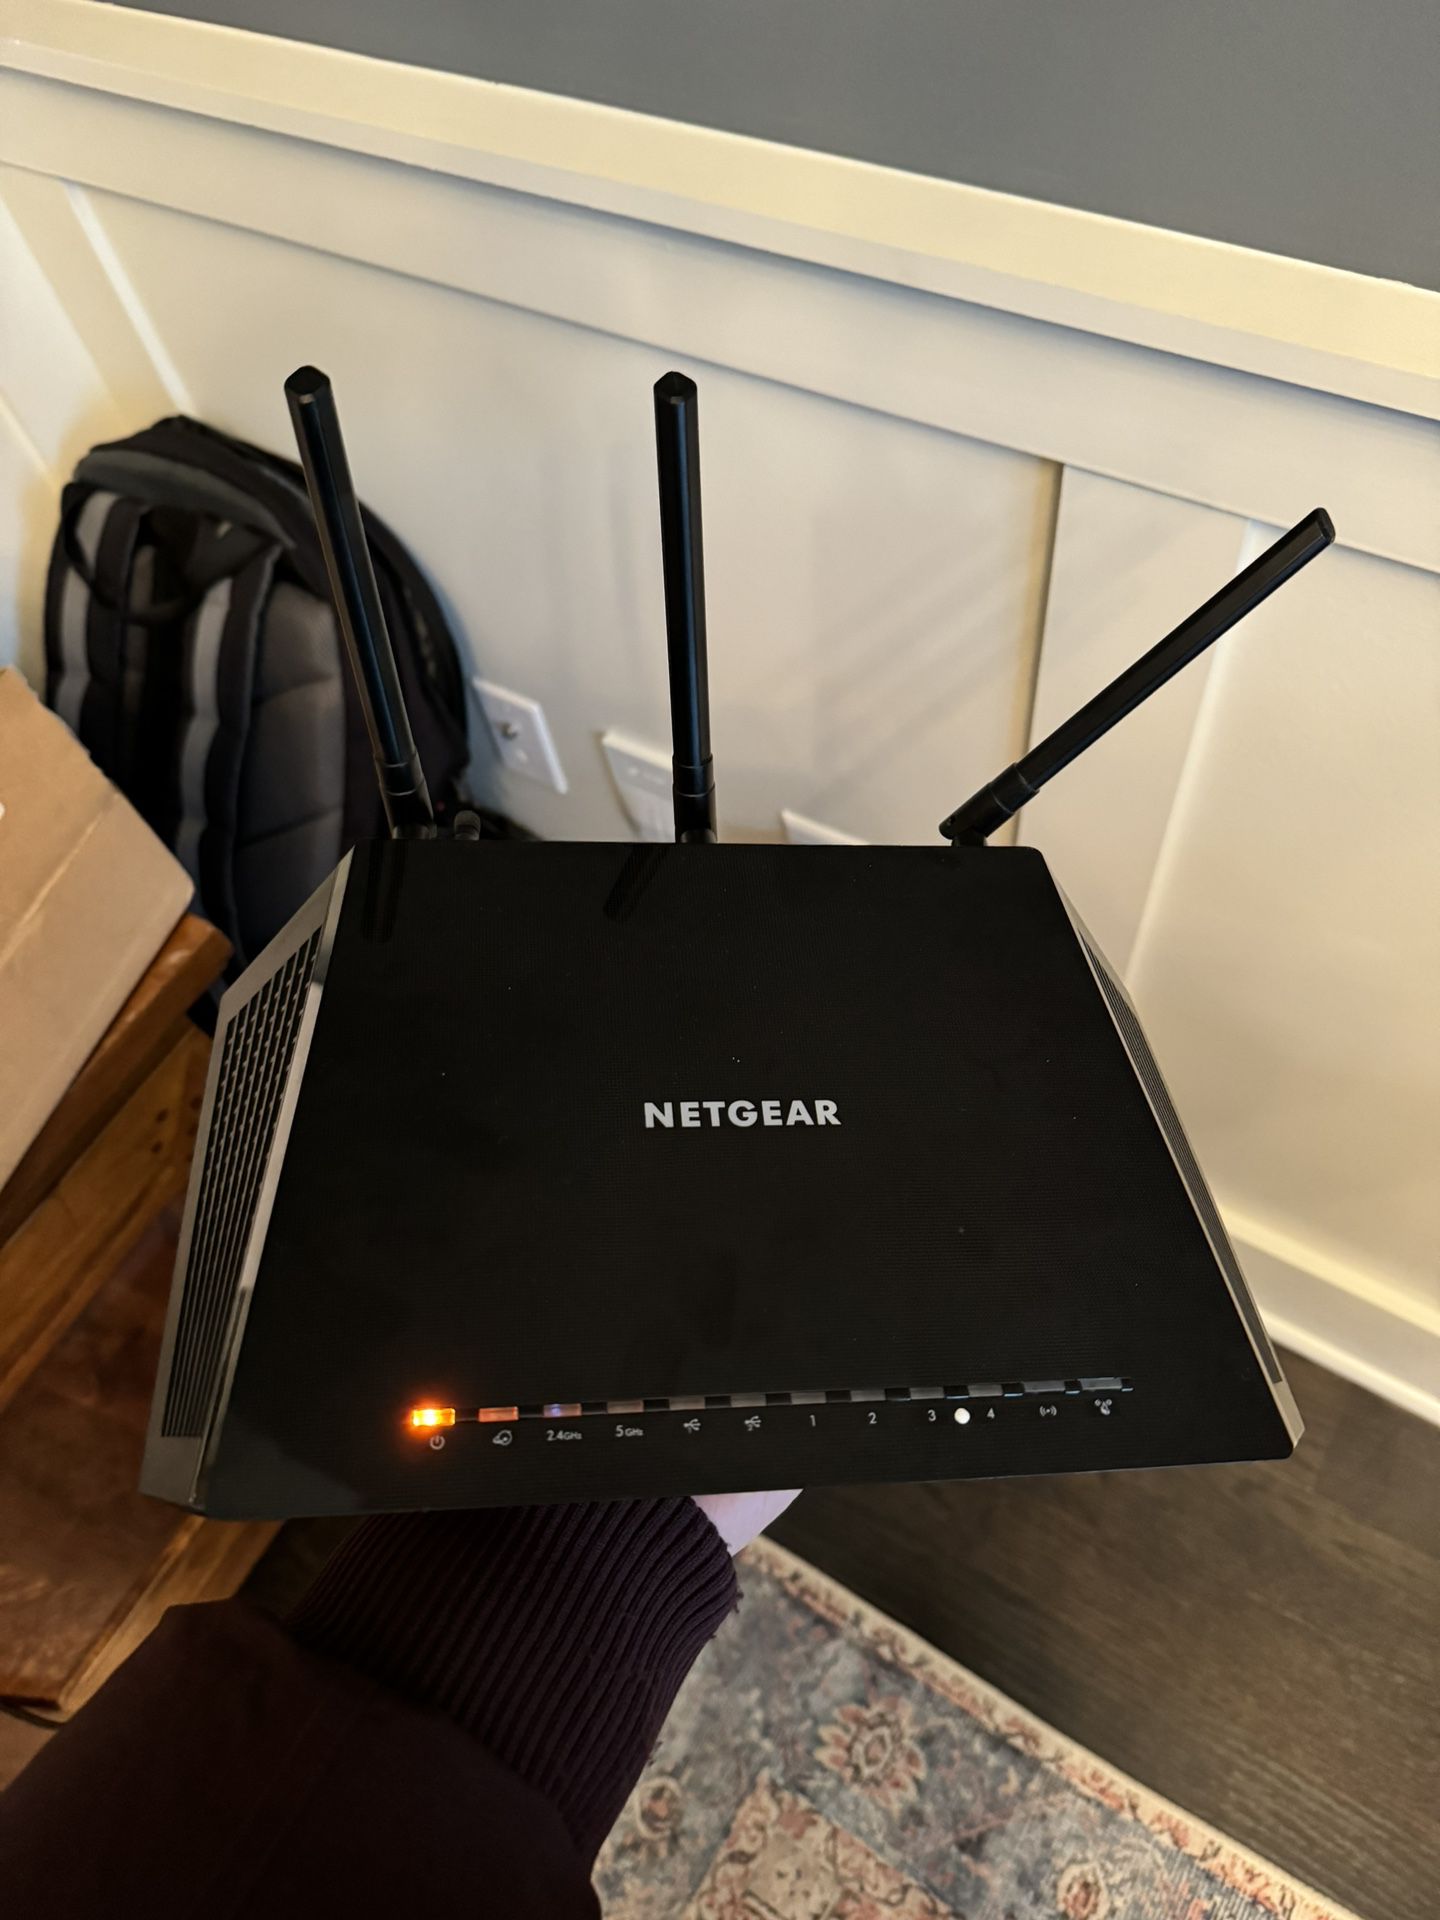 Netgear Nighthawk R6400v2 Router